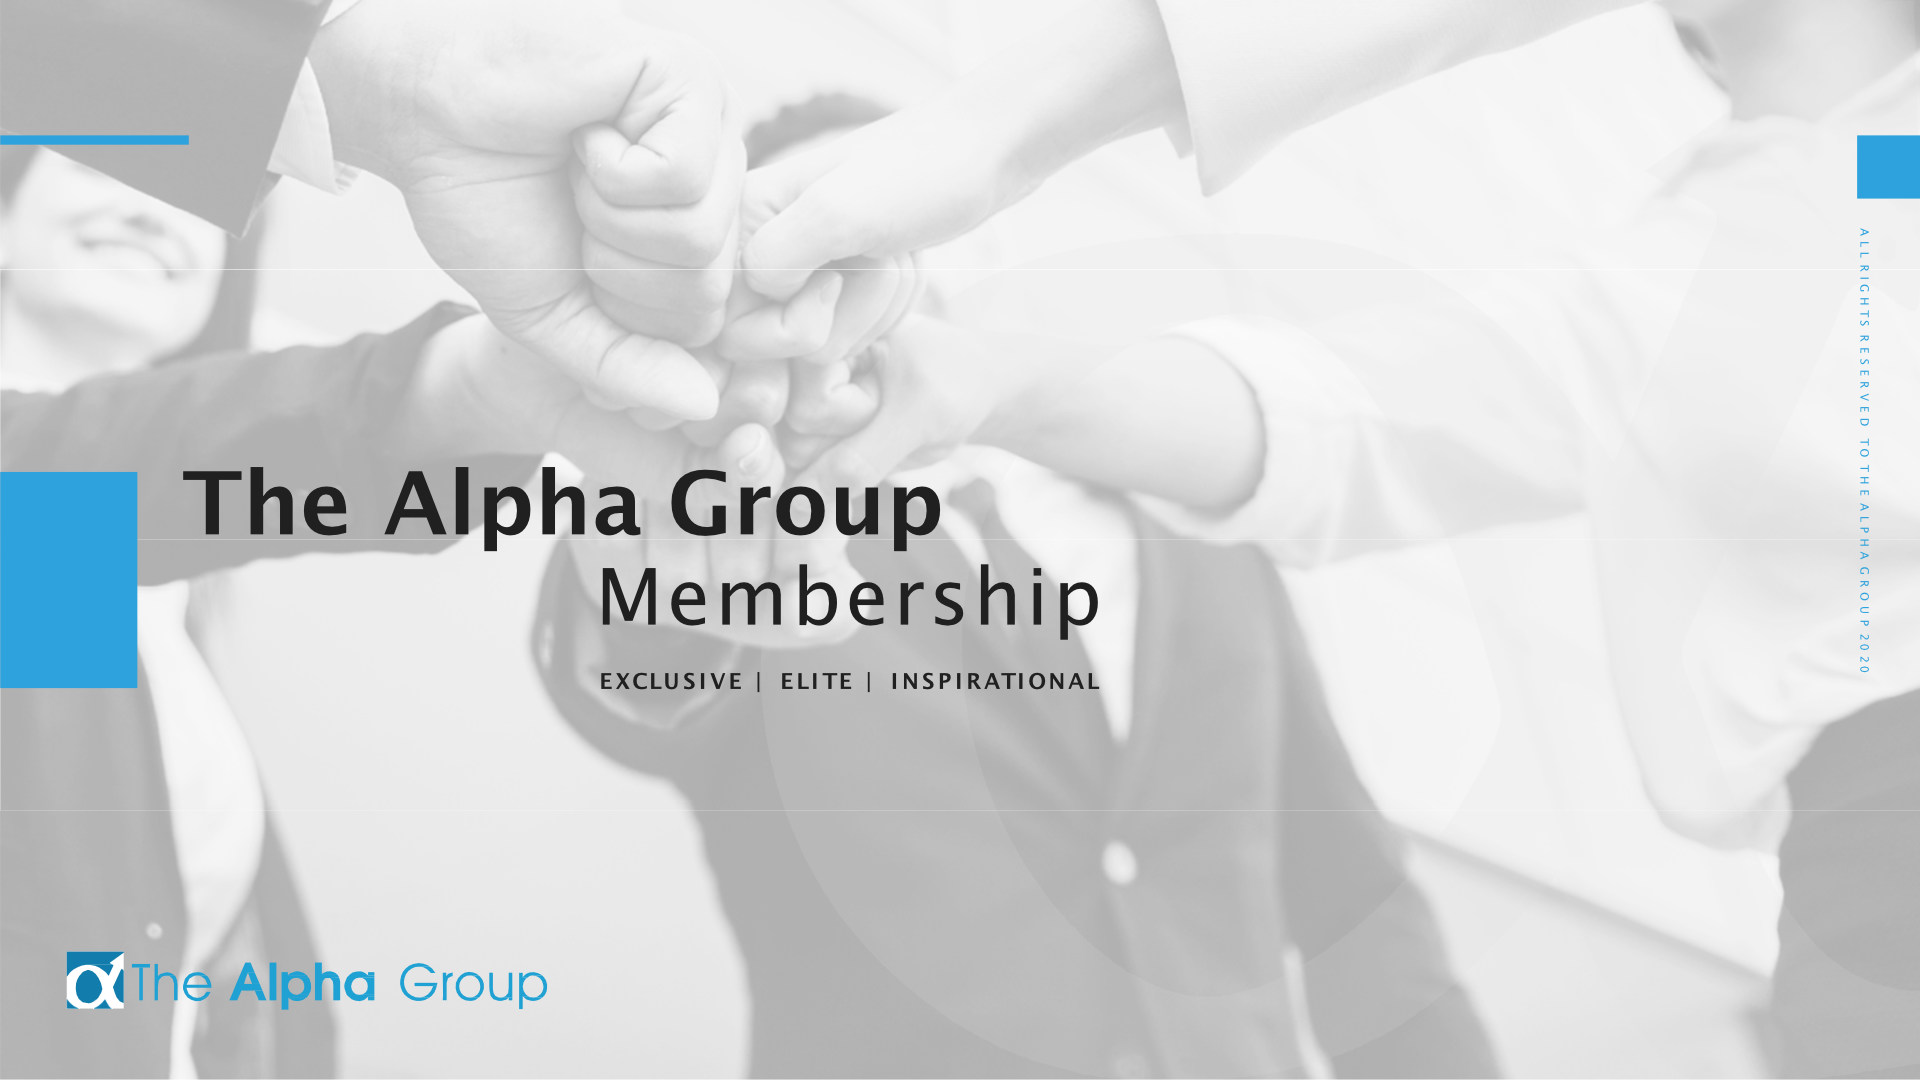 The Alpha Group